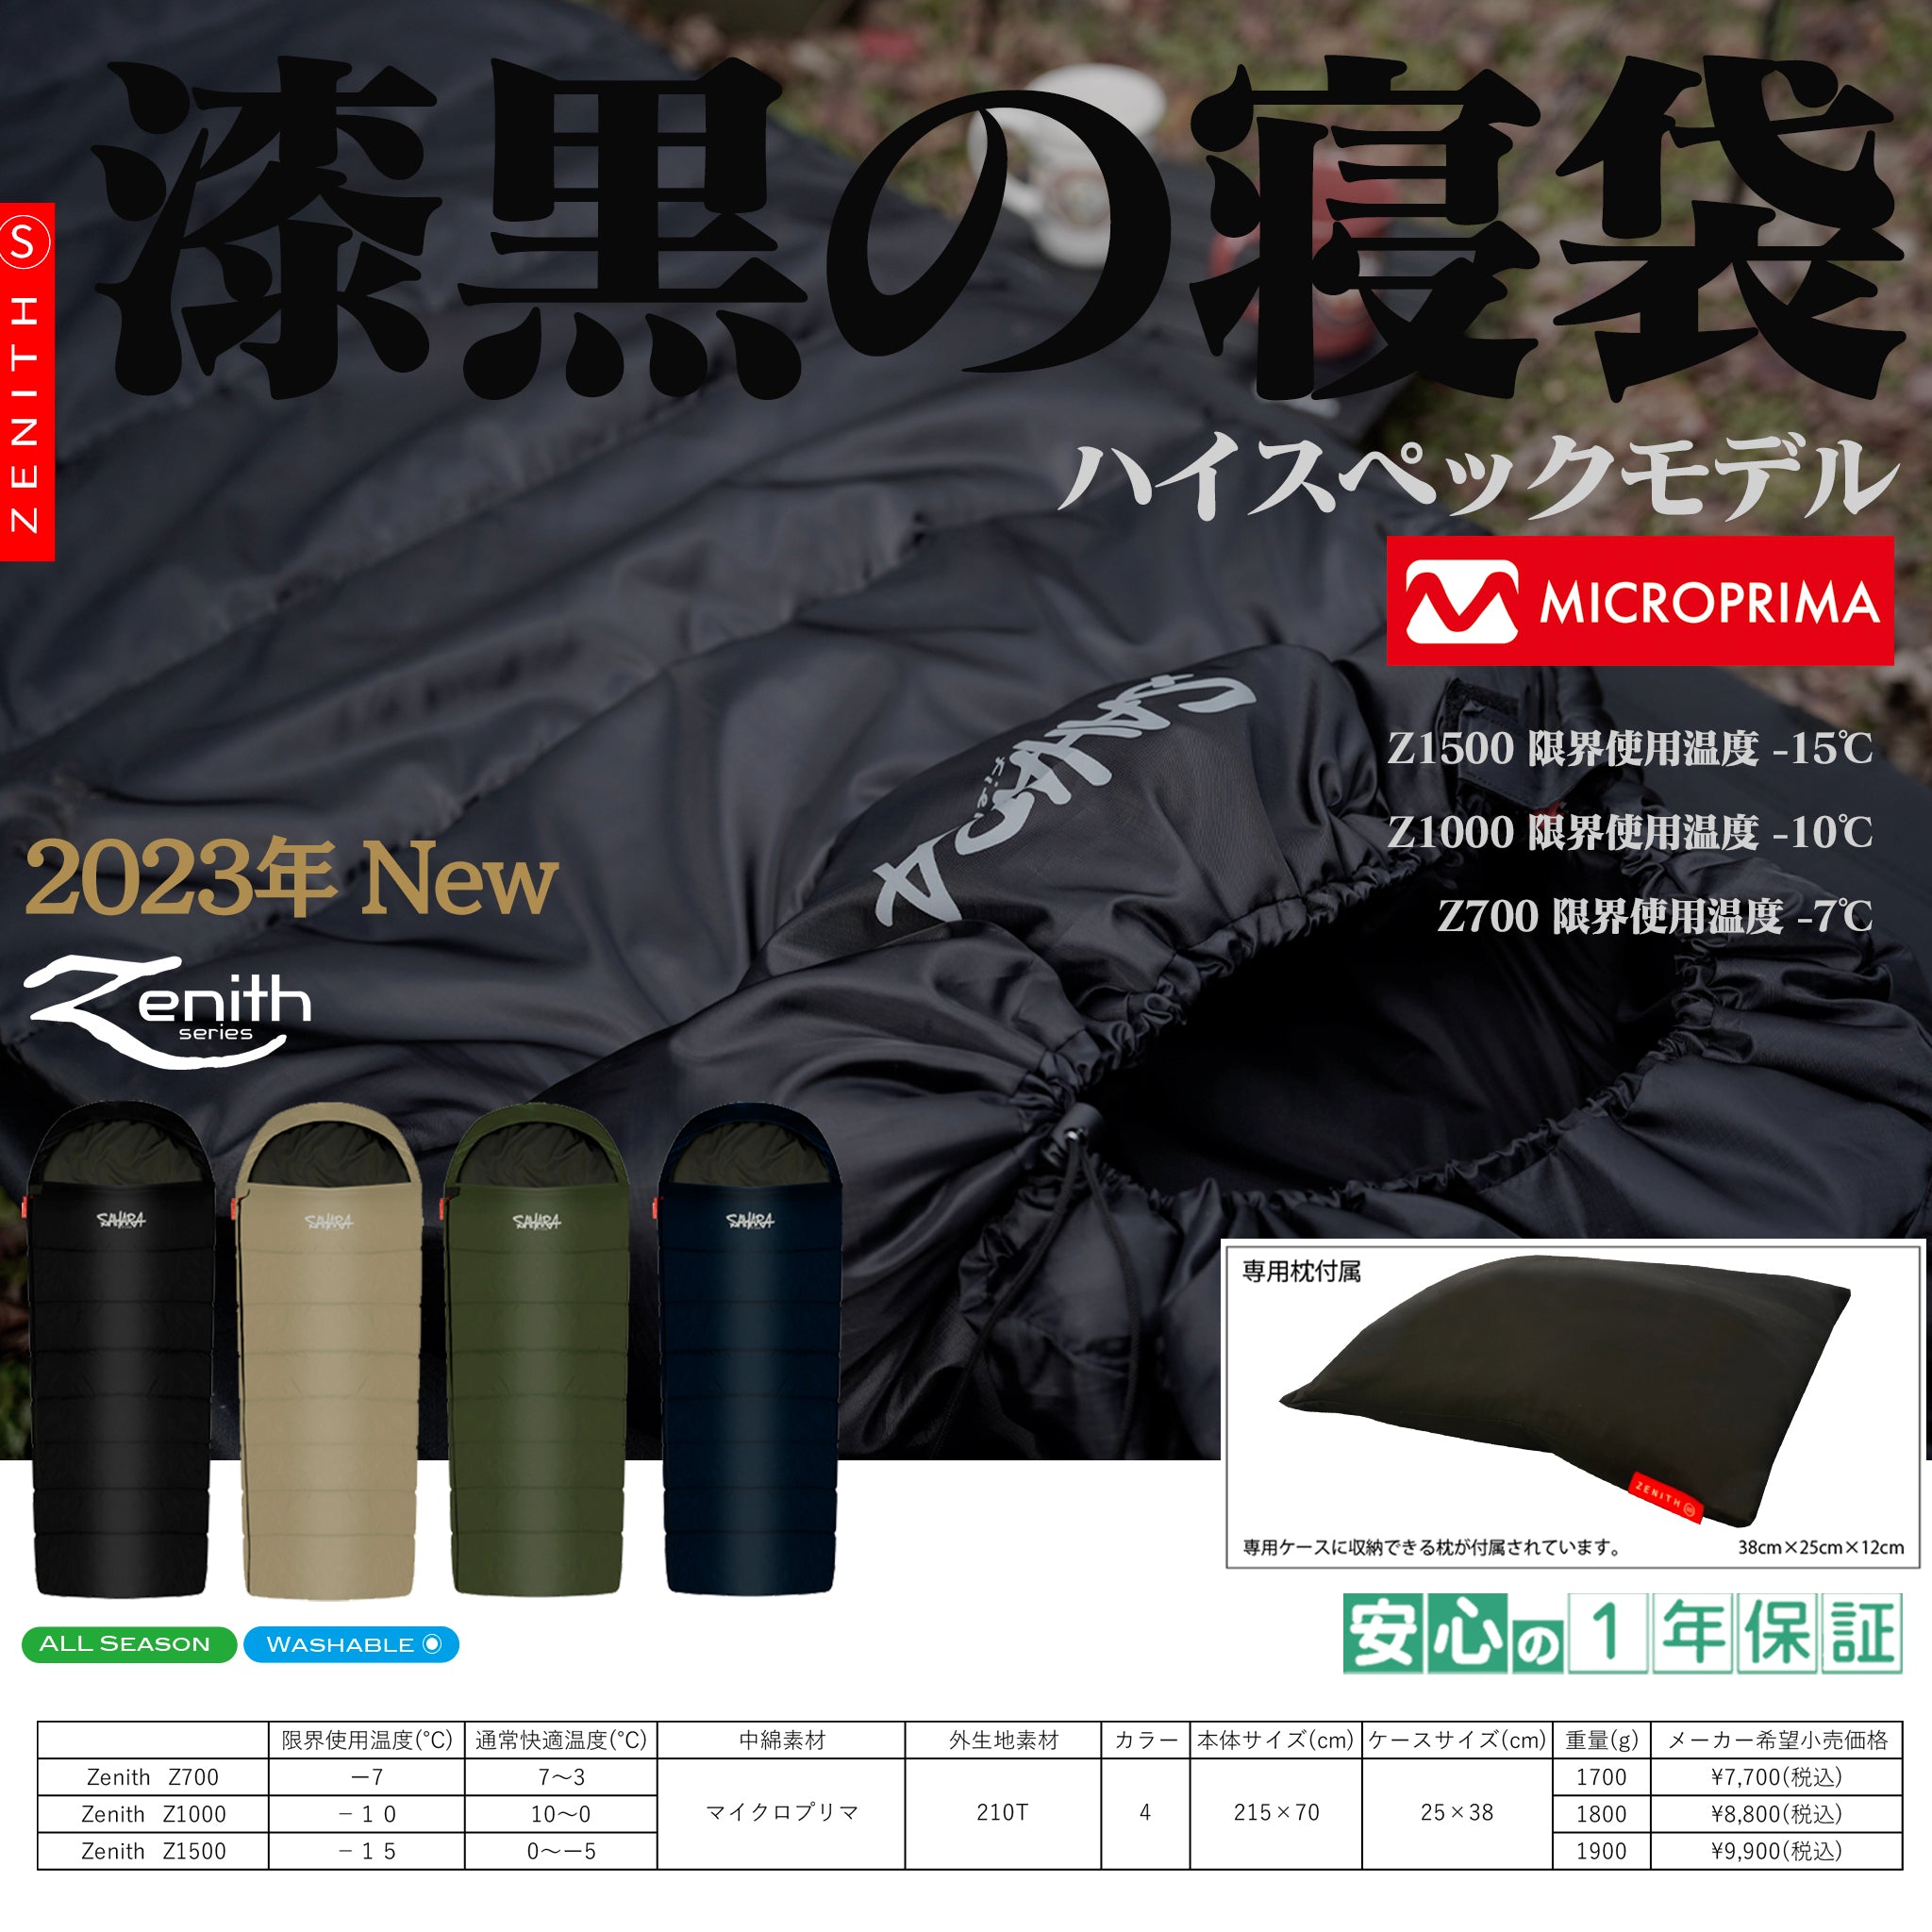 FieldSAHARA Z700 封筒型 枕付き 4色 限界使用可能温度 -7℃ ダウン